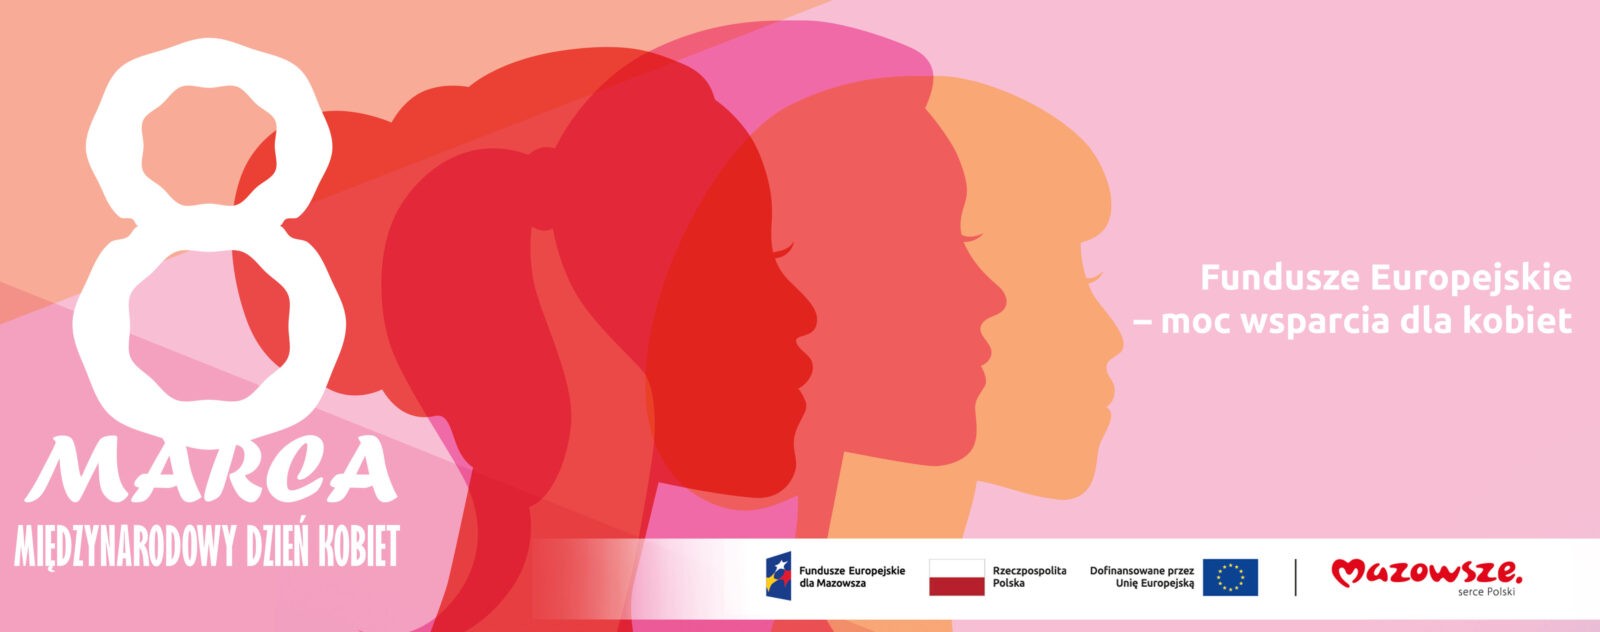 grafika przedstawia napis: Fundusze Europejskie – moc wsparcia dla kobiet 8 marca Międzynarodowy Dzień Kobiet